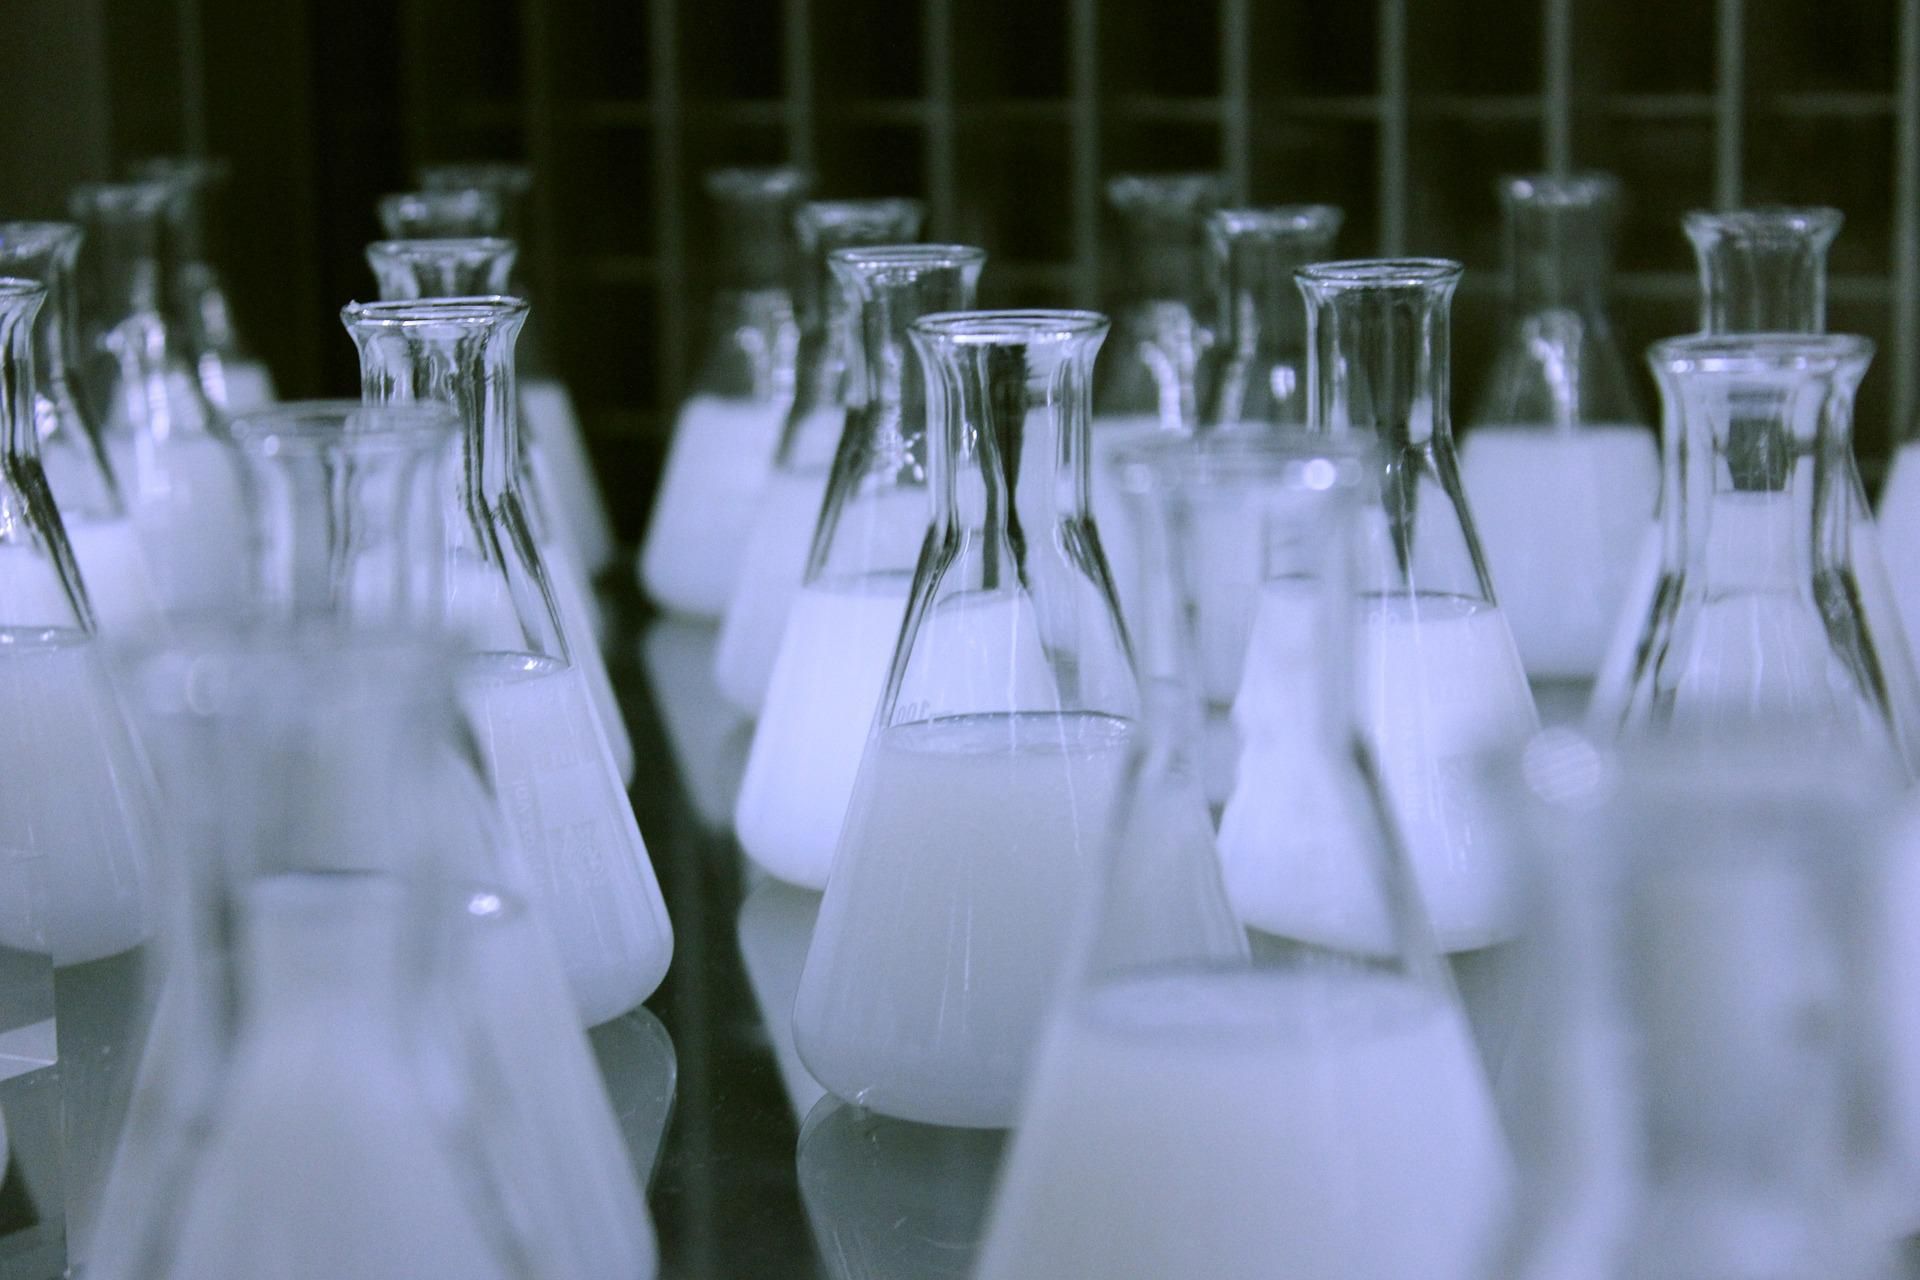 Matraces de laboratorio llenos de líquido blanco